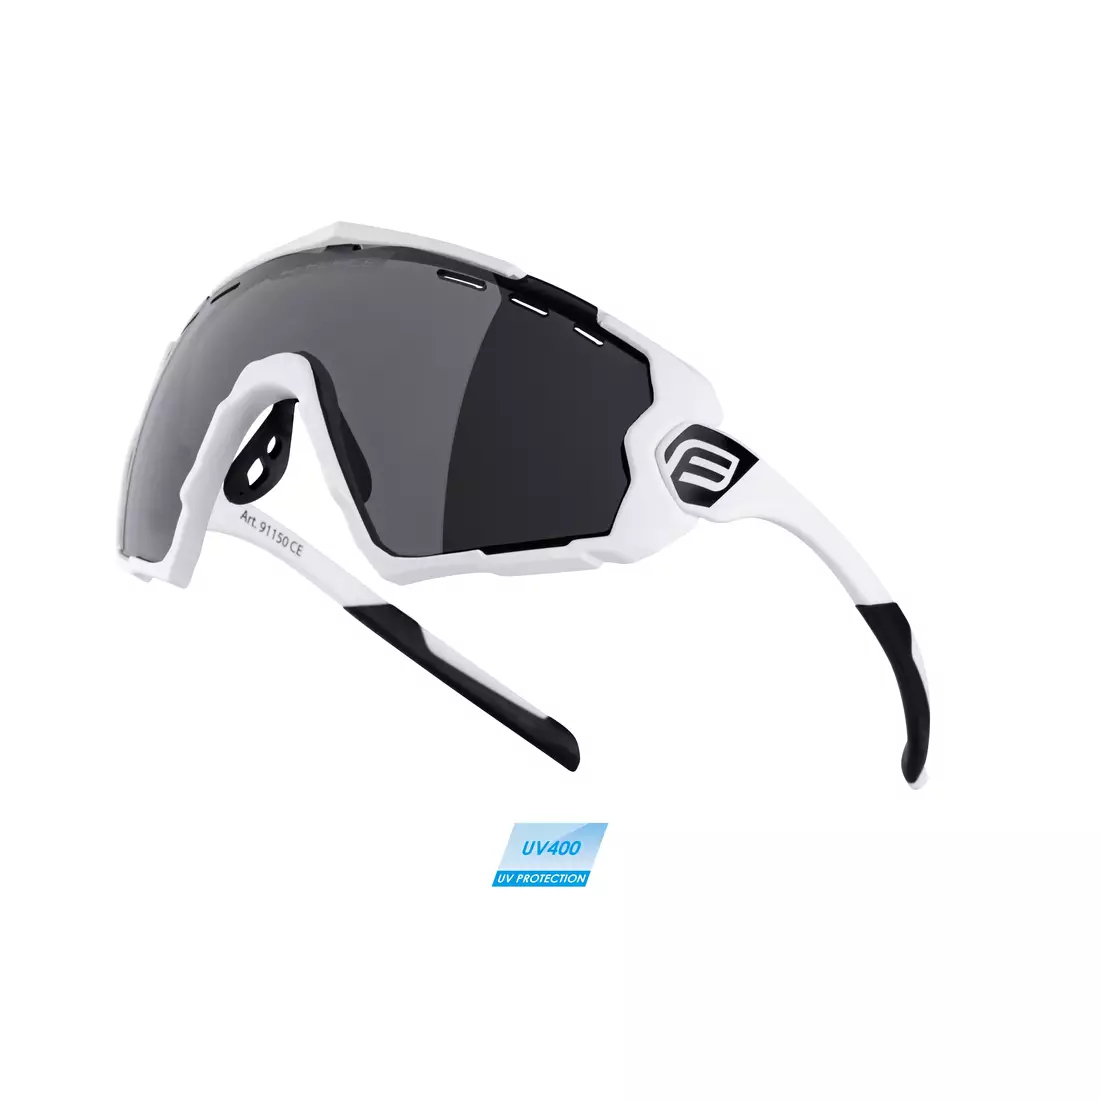 FORCE Fahrrad / Sportbrille OMBRO white 91150